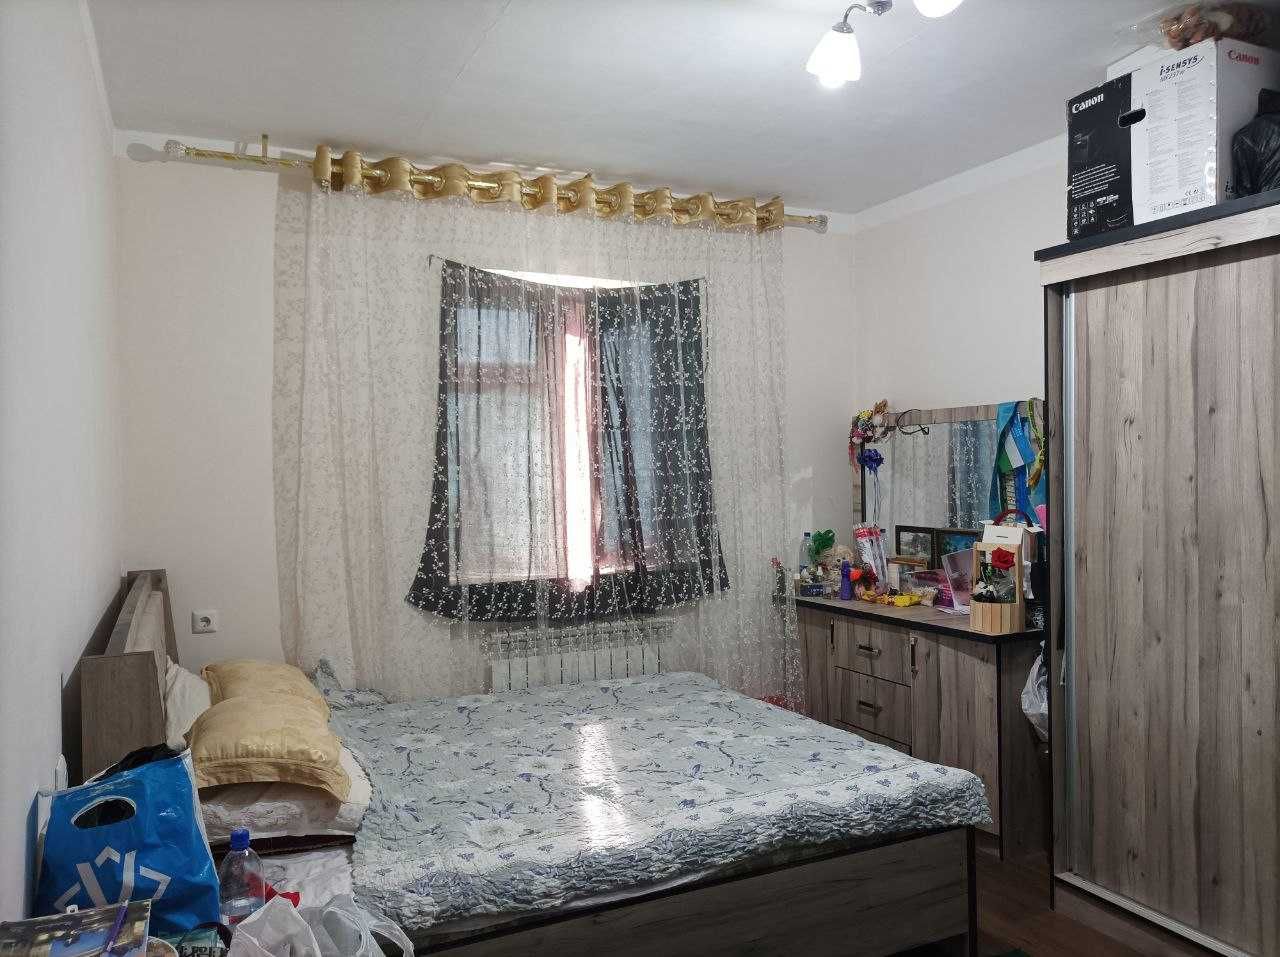 Продается 3-х комнатная квартира в Яшнабаде (RM)